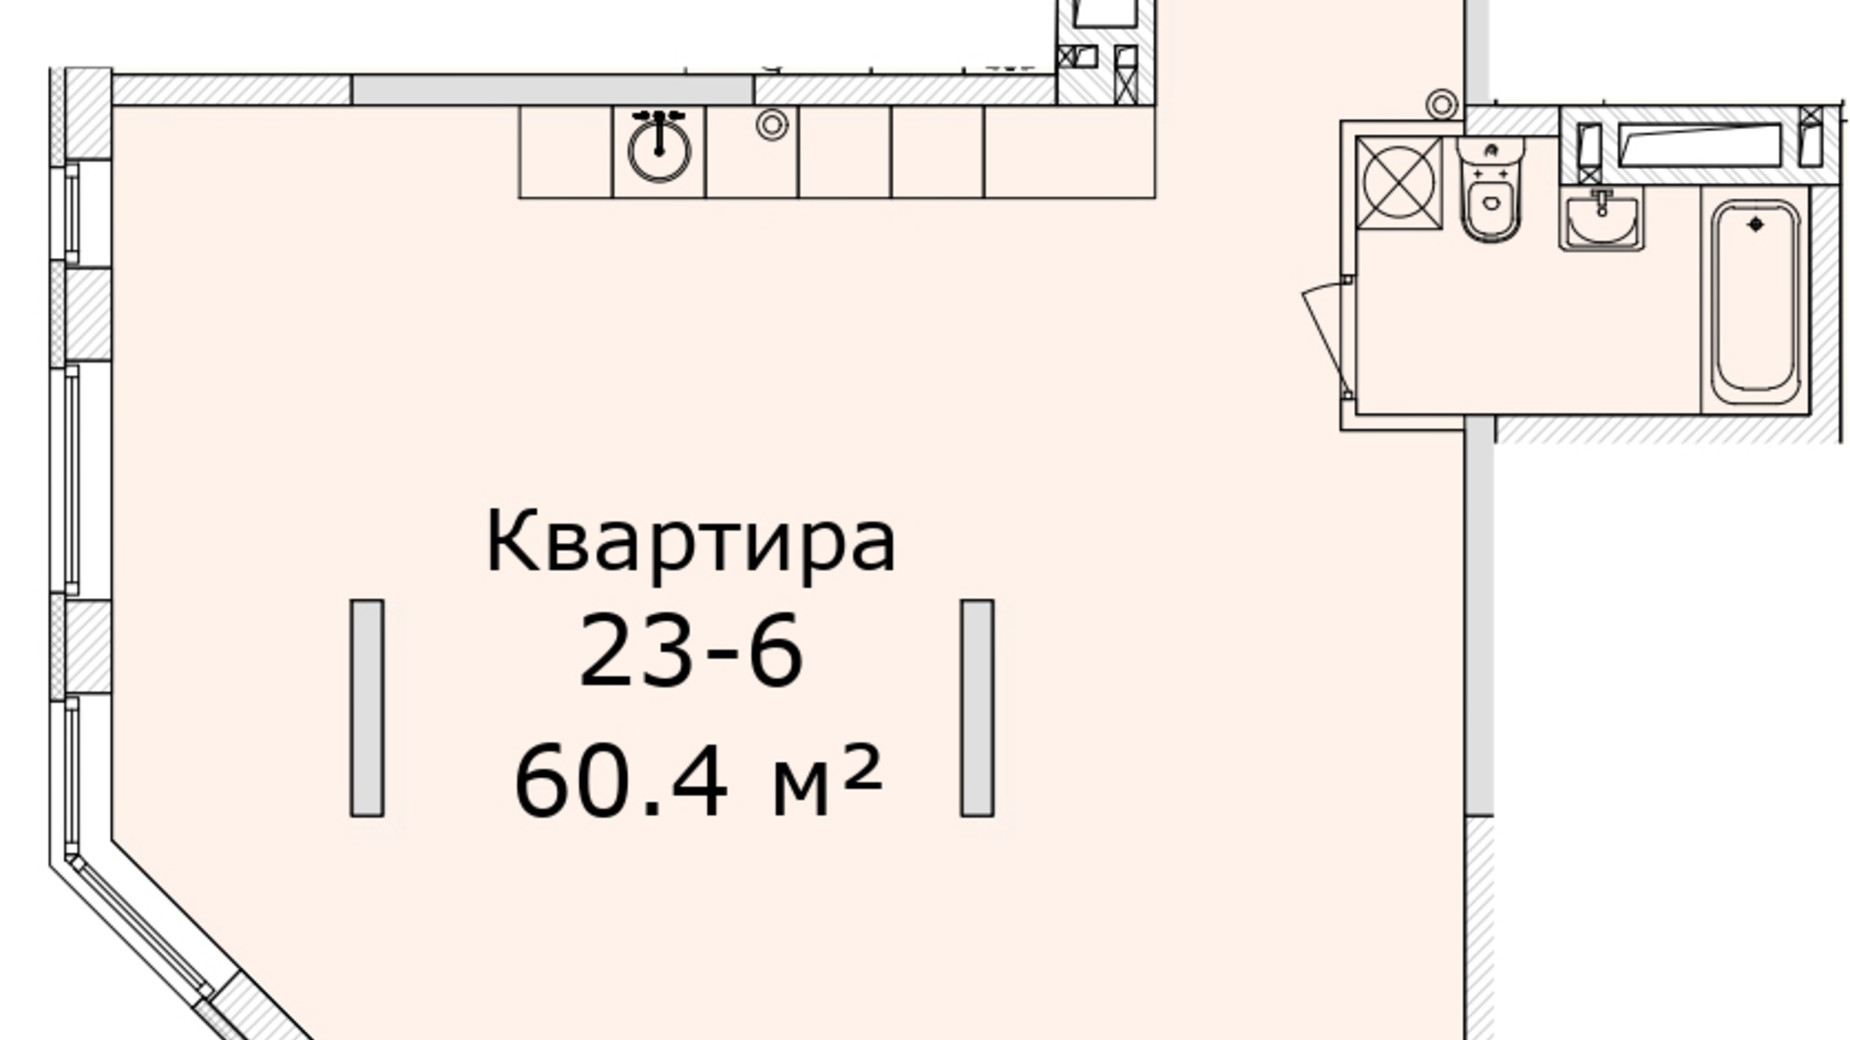 Планировка 2-комнатной квартиры в МФК Industrial 60.4 м², фото 714875